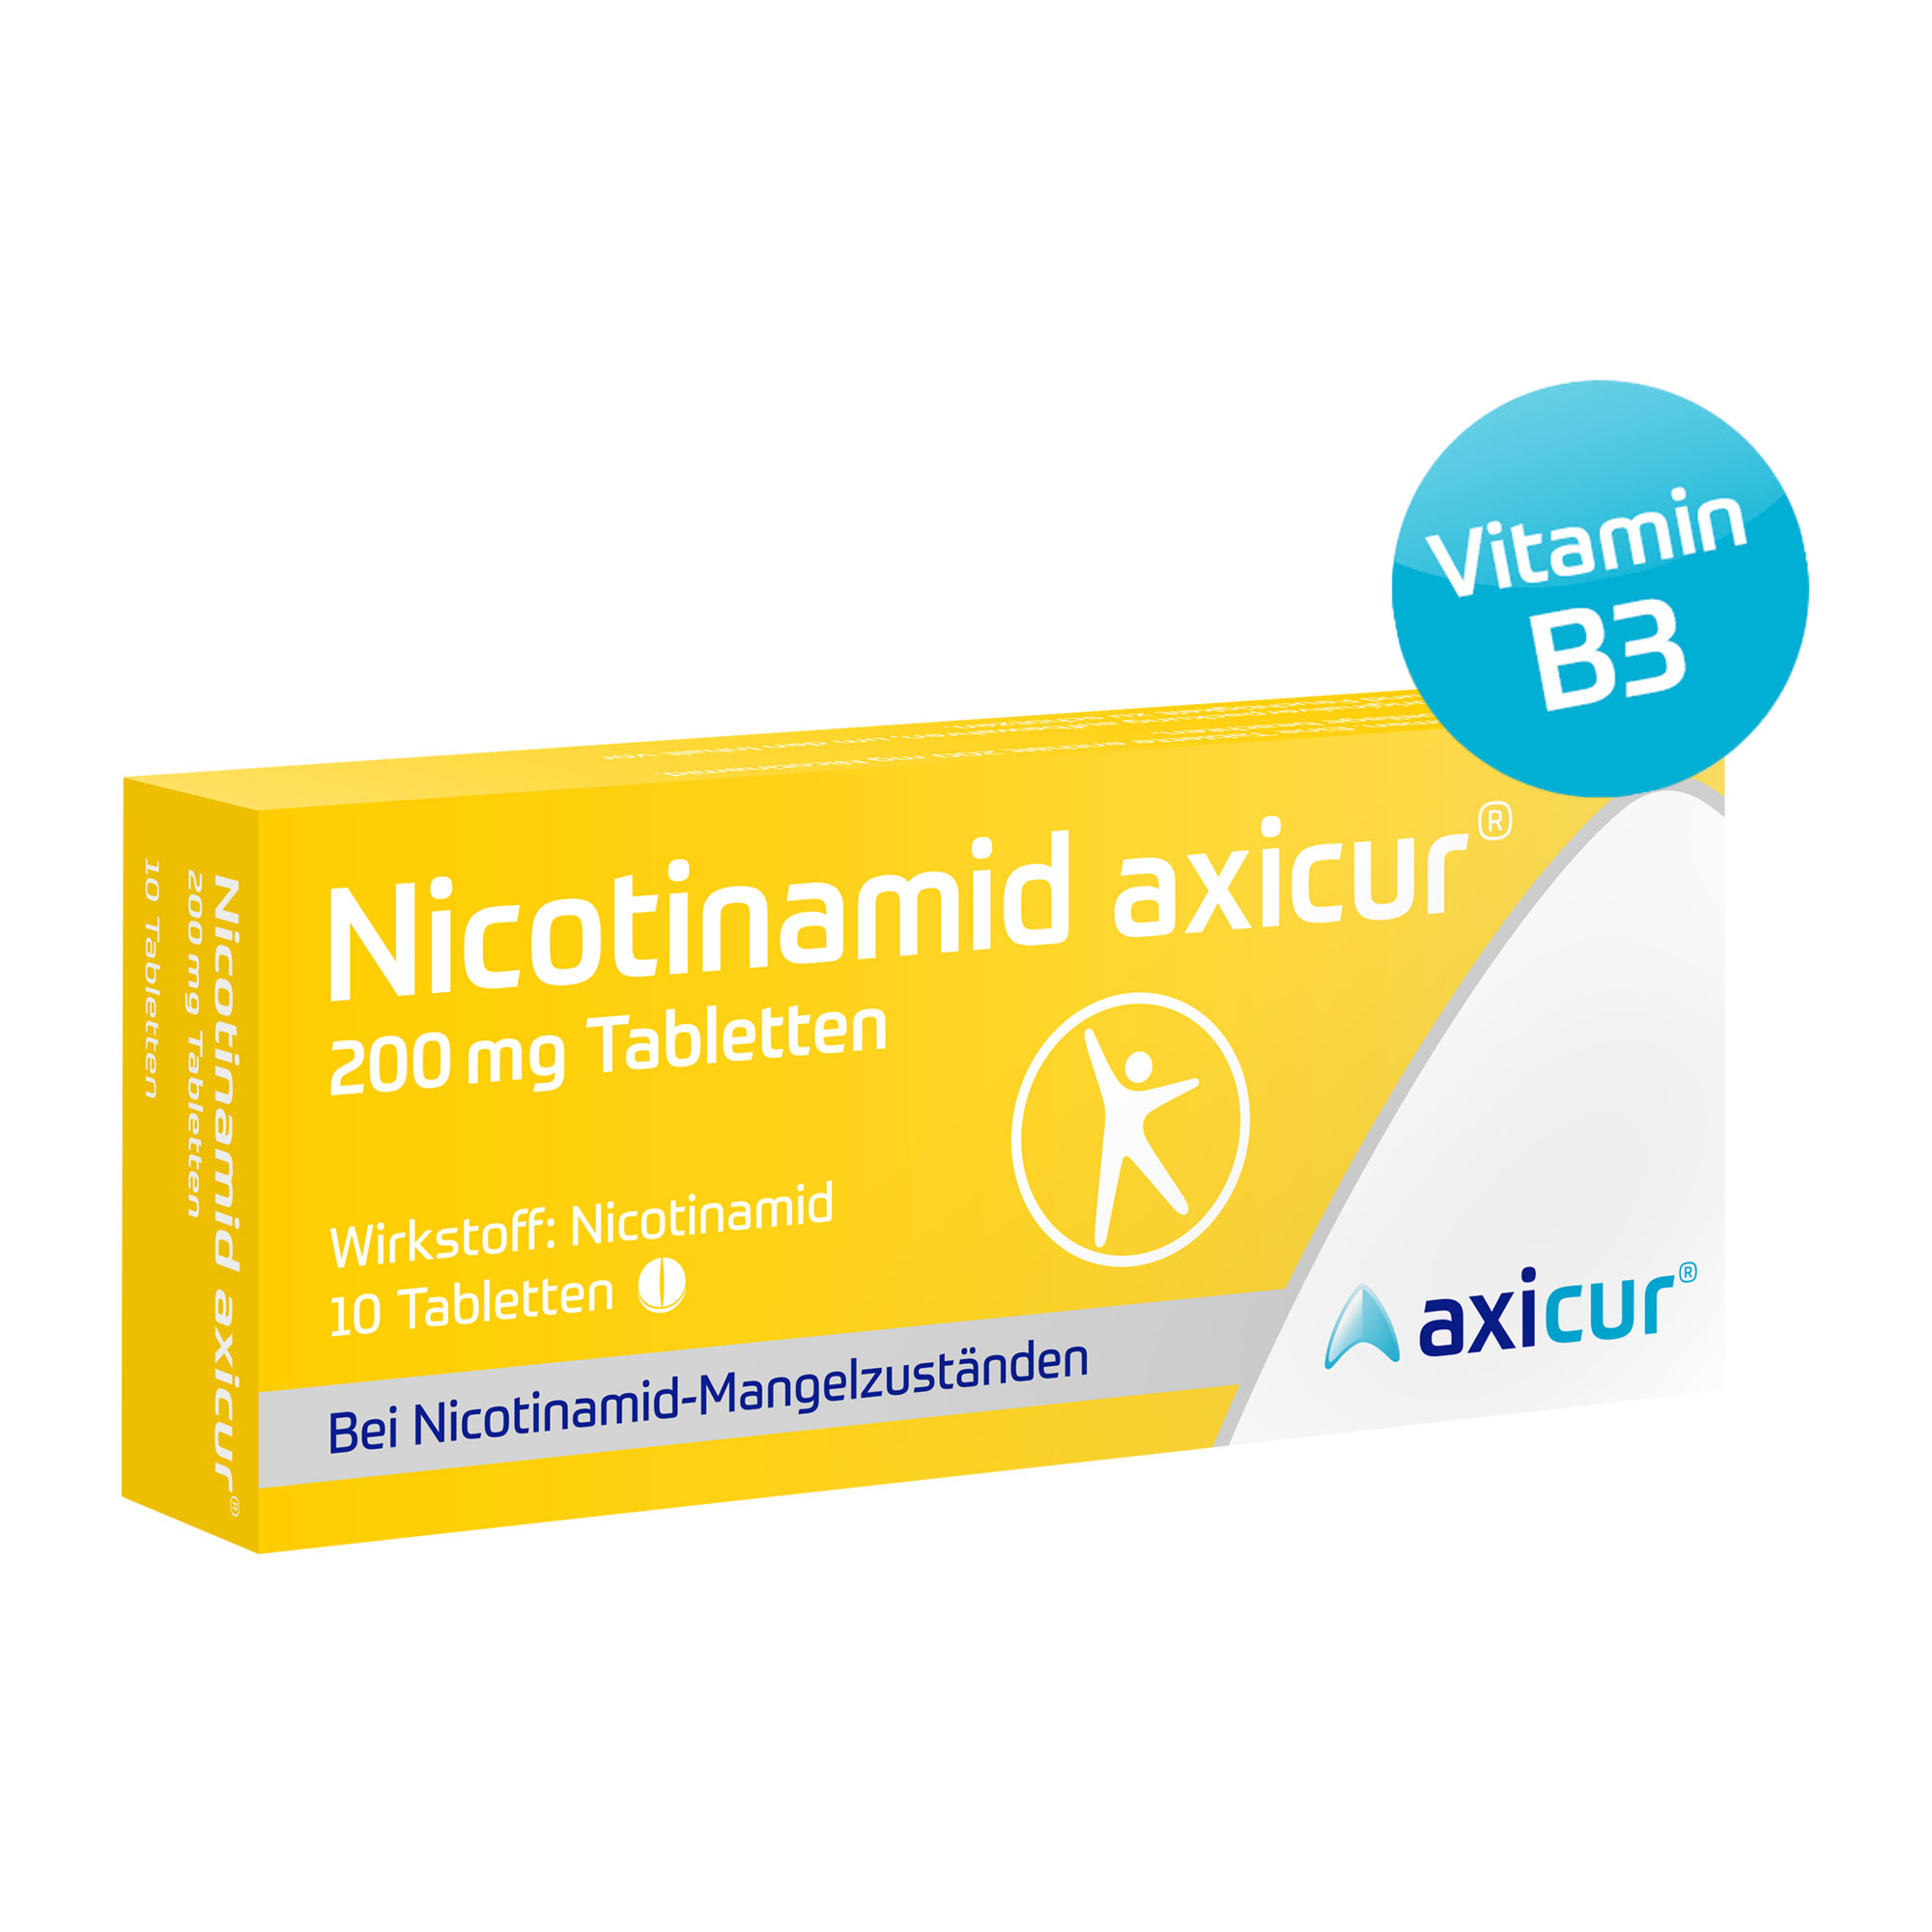 Nicotinamid auch bekannt als Vitamin B3 oder Niacin. Zur Behandlung klinischer Nicotinamid-Mangelzustände bei Mangel- und Fehlernährung.